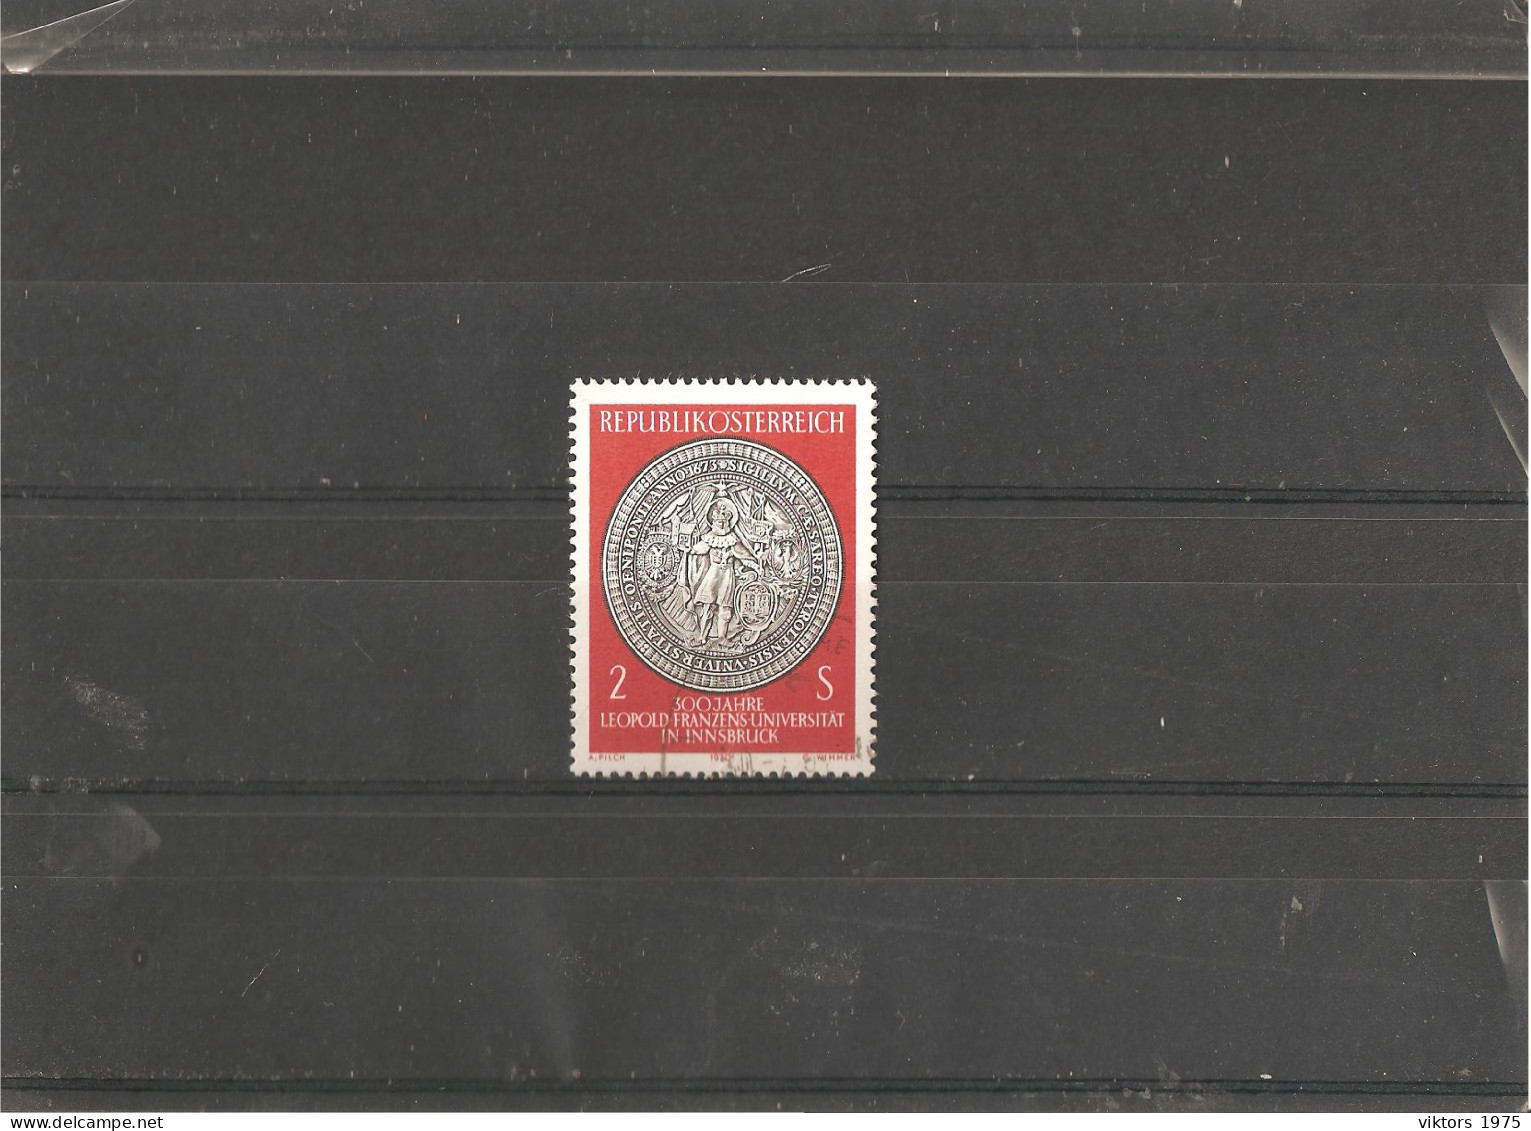 Used Stamp Nr.1326 In MICHEL Catalog - Usati